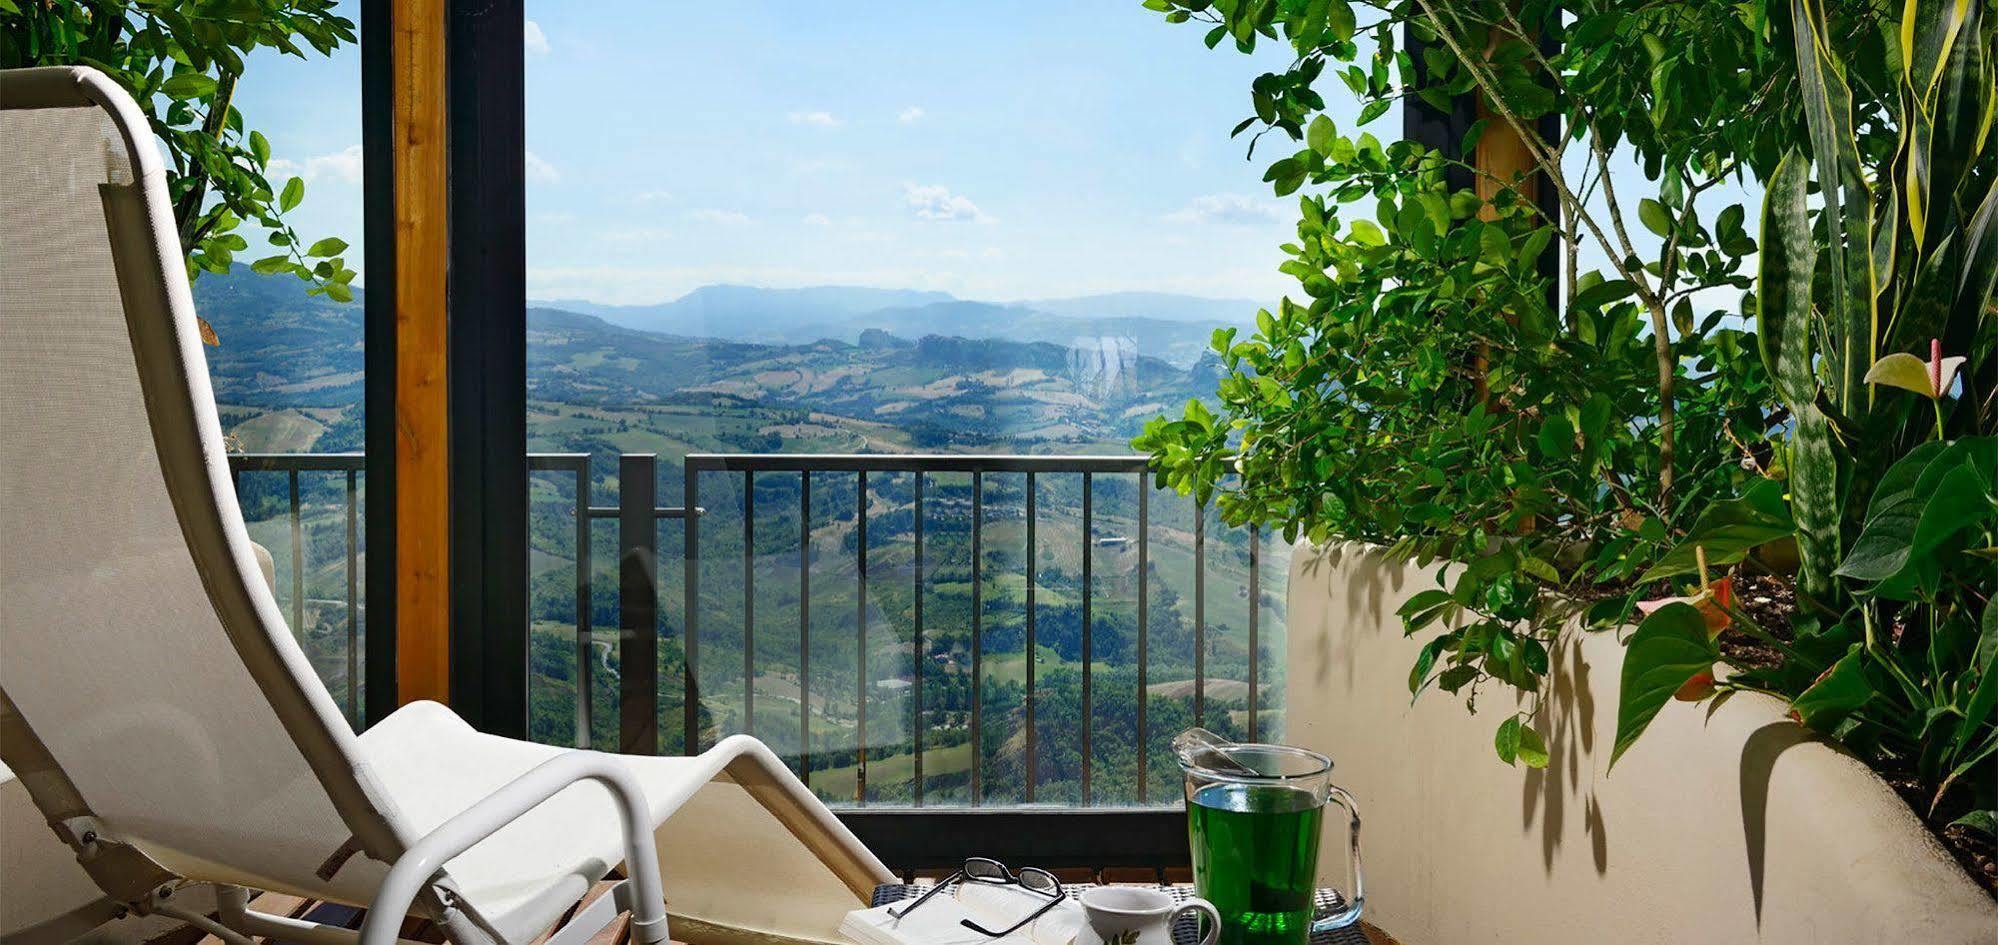 Grand Hotel San Marino Esterno foto